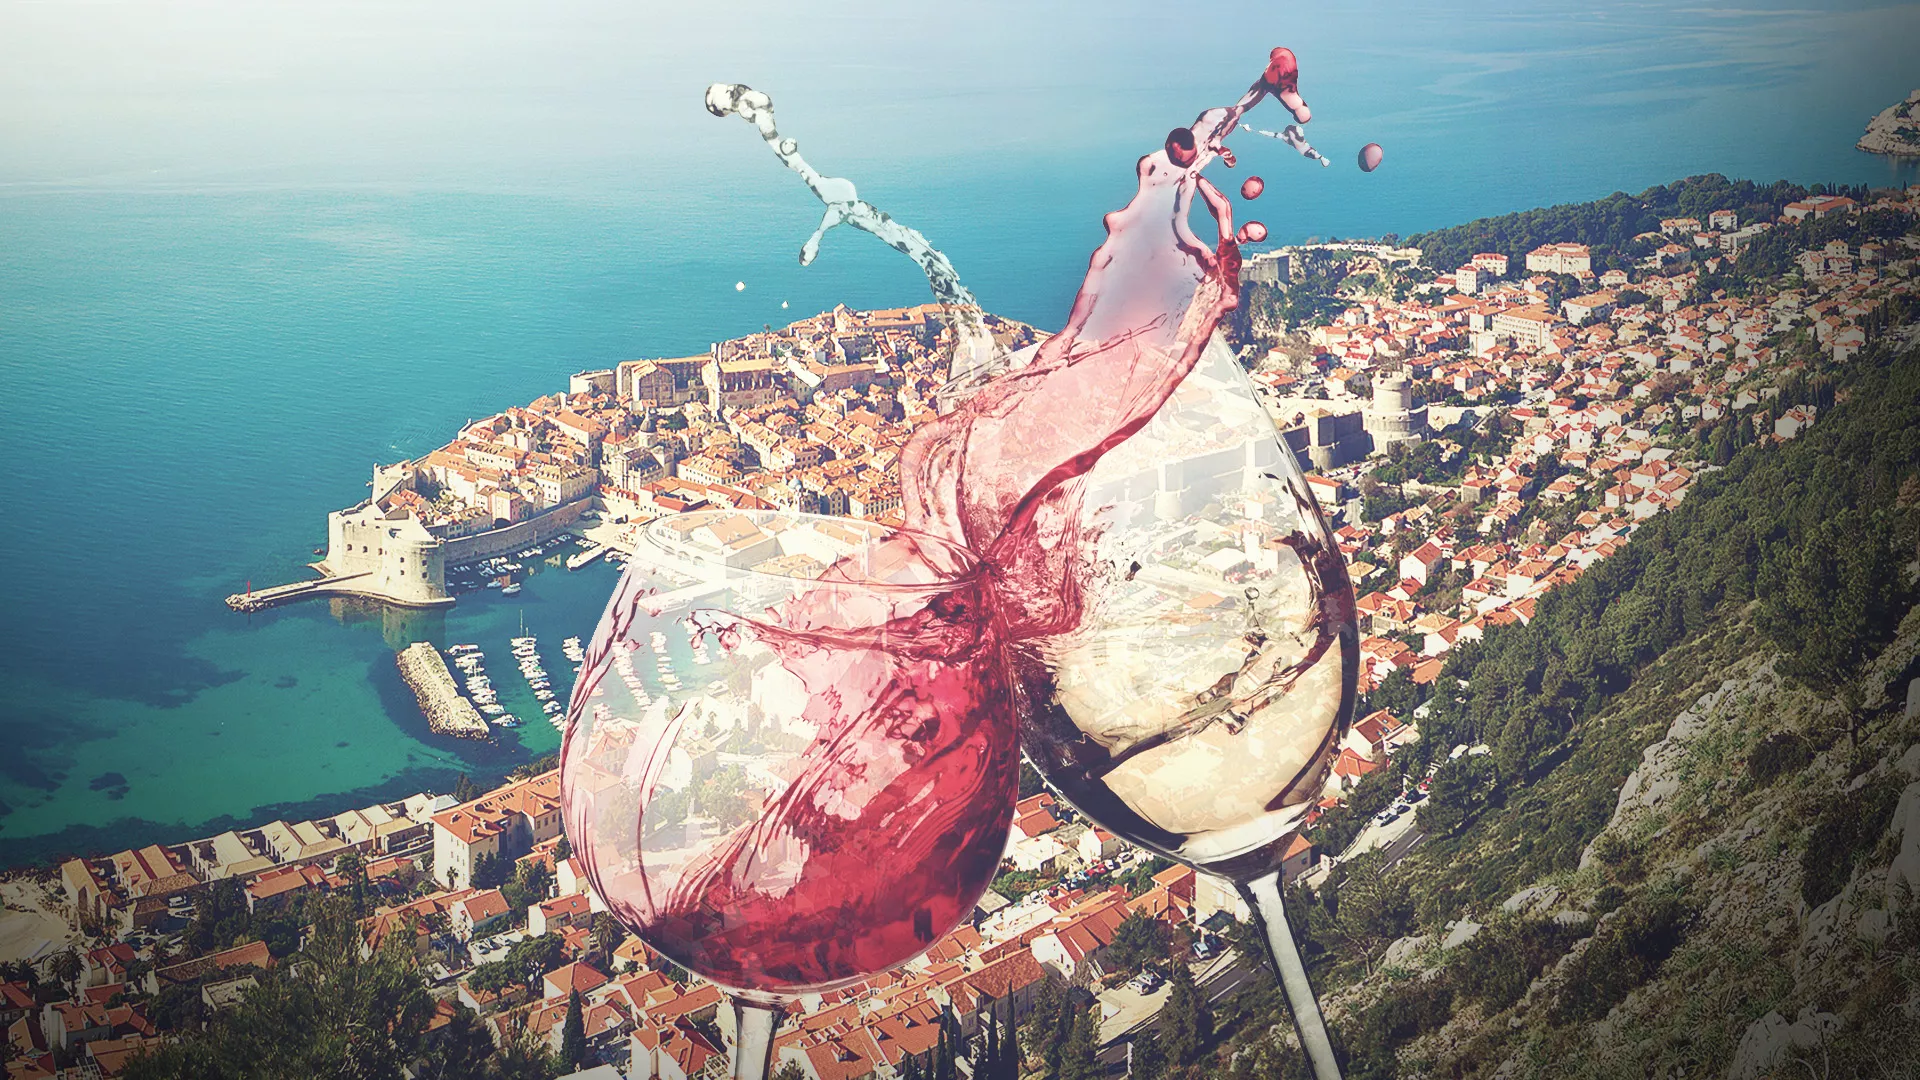 Skar Winery Dubrovnik in Croatia, Europe | Wineries - Rated 4